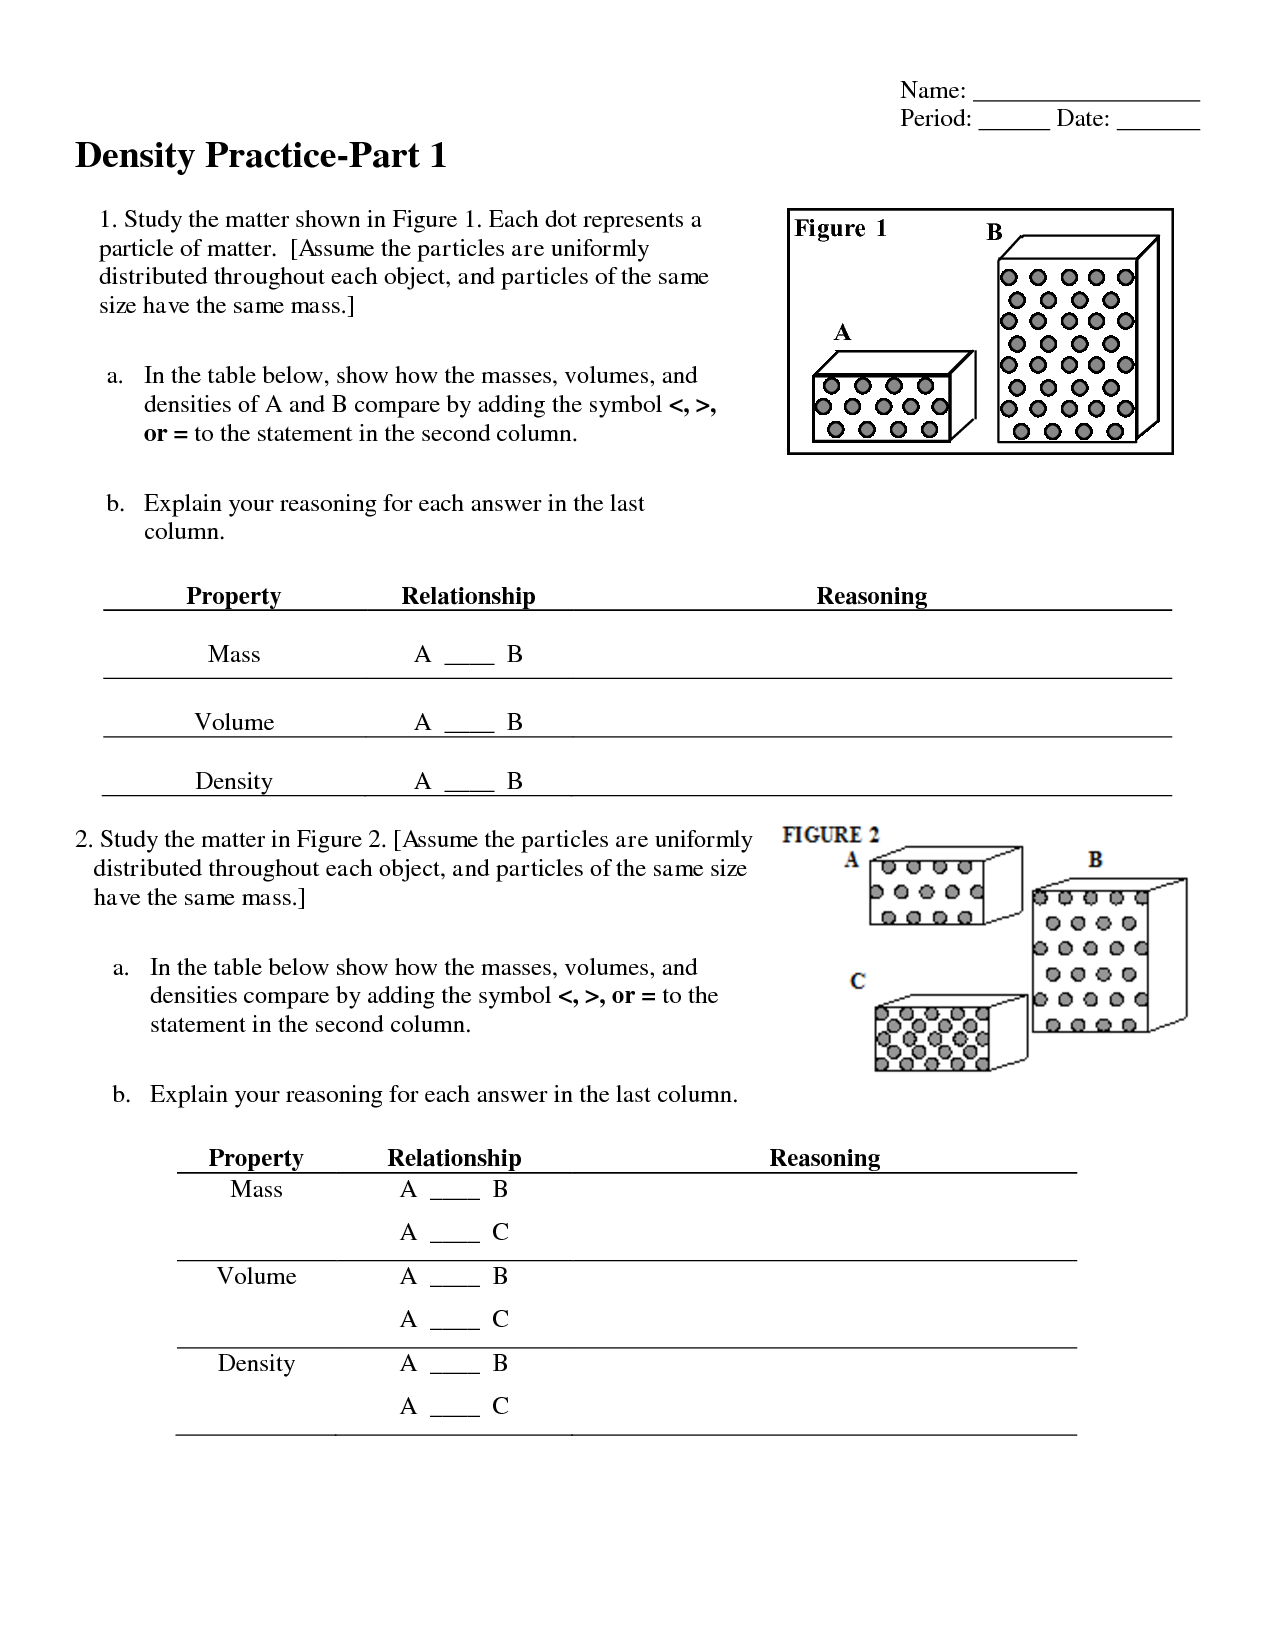 Chemistry Unit 1 Worksheet 3 Answers Image